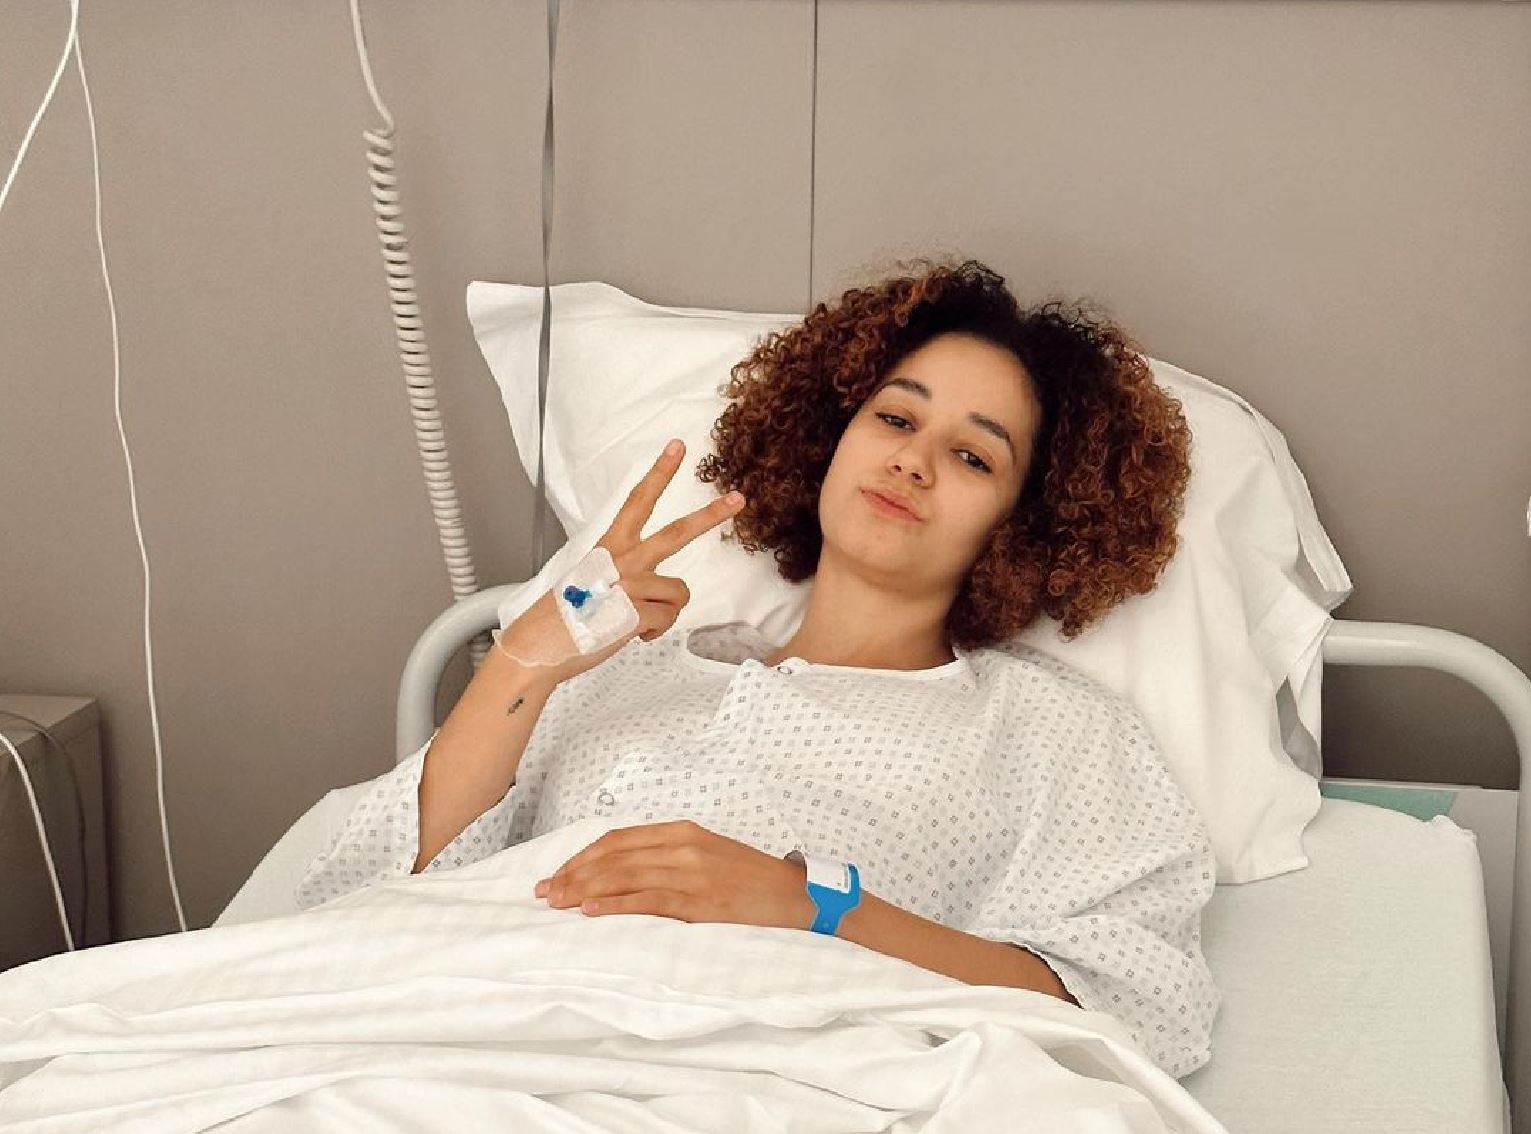 Léna Situations sur son lit d’hôpital, elle revient sur ces derniers mois "étranges et imprévus"